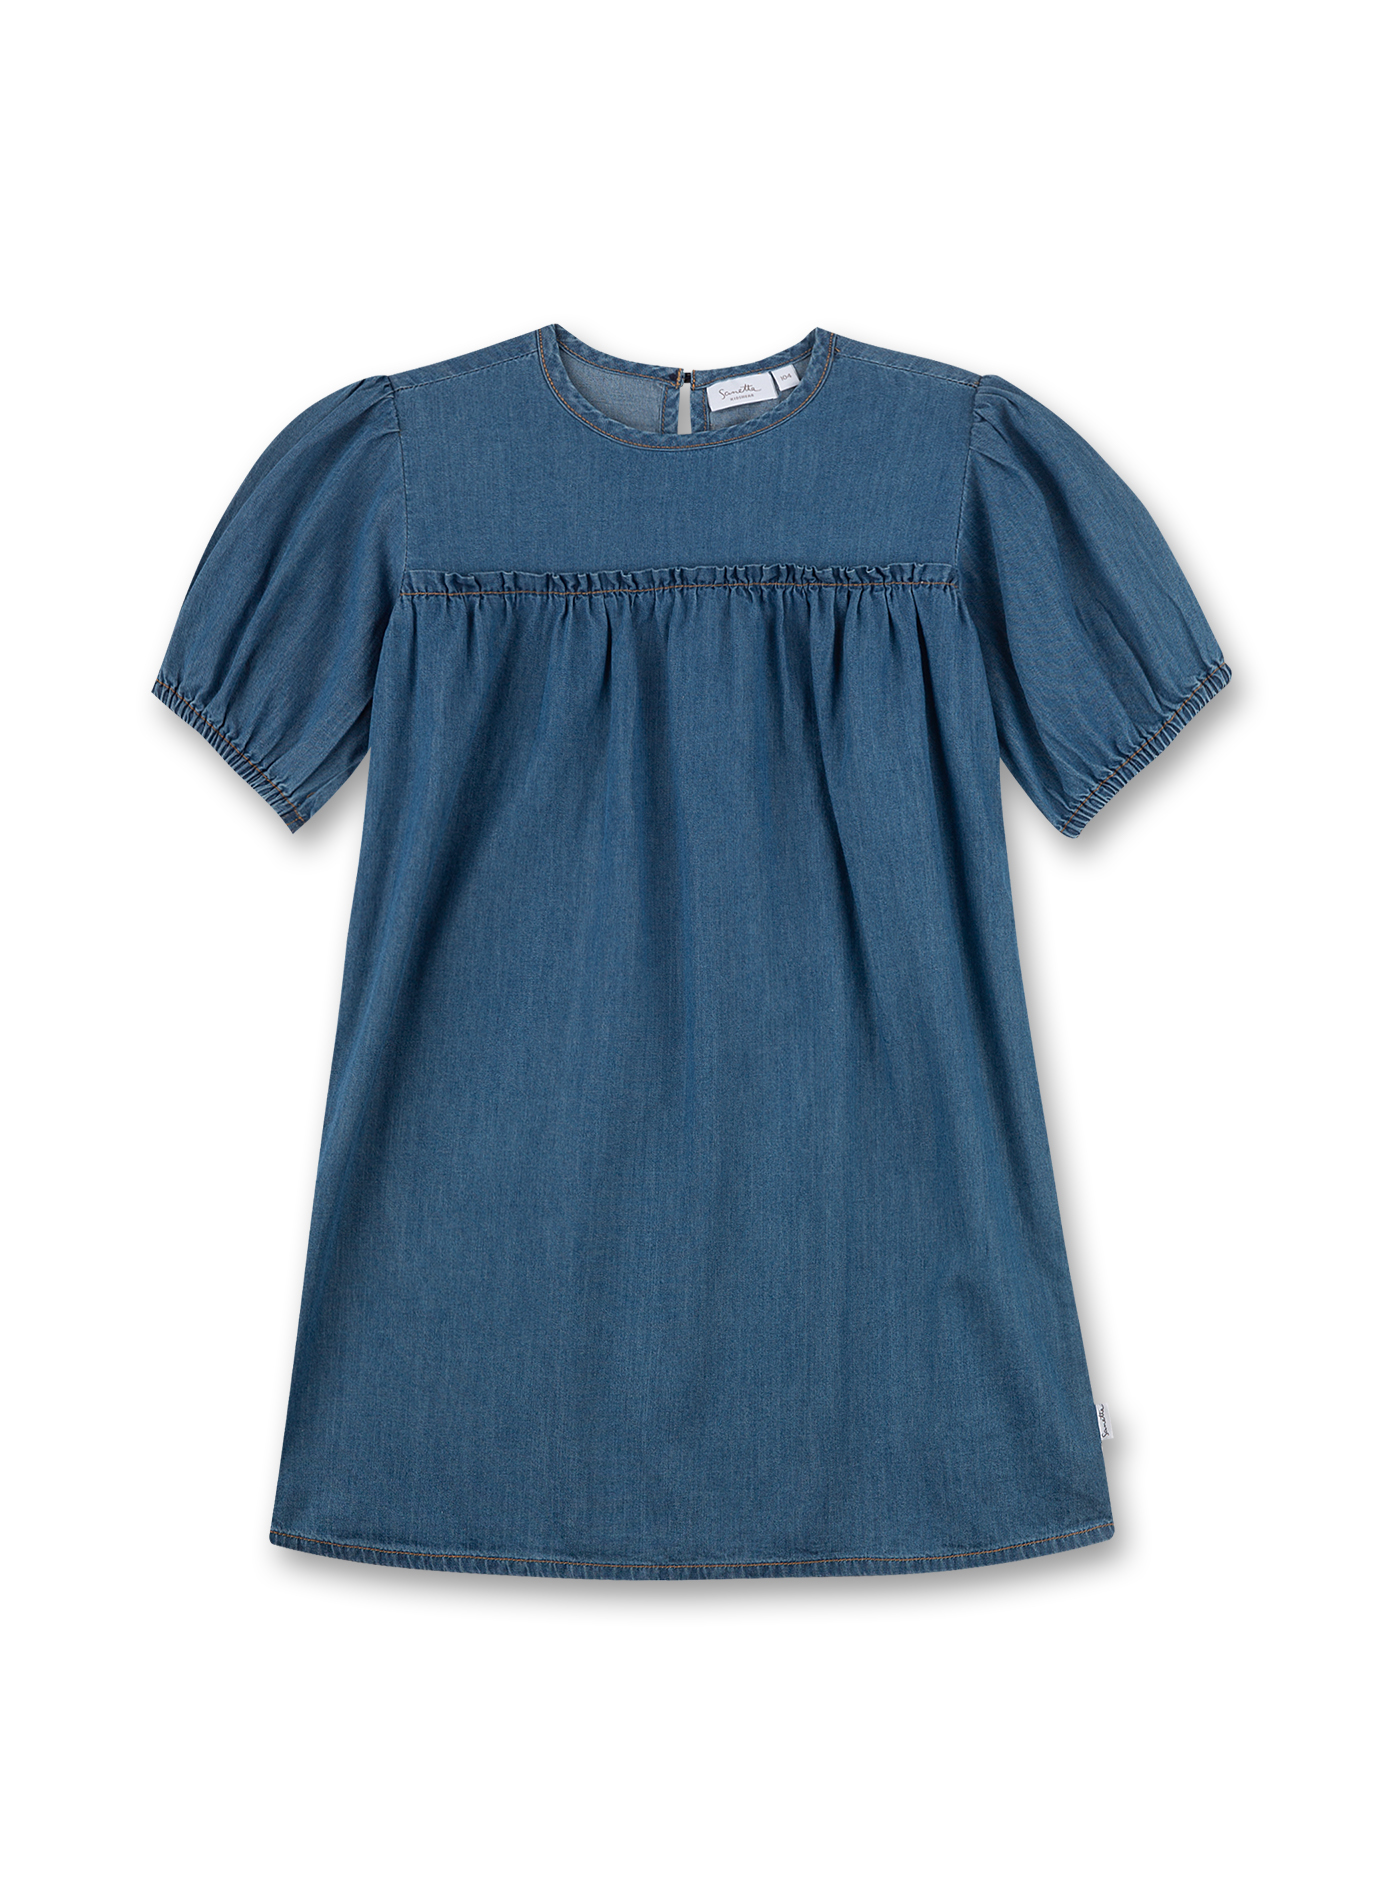 Mädchen-Kleid Blau Denim